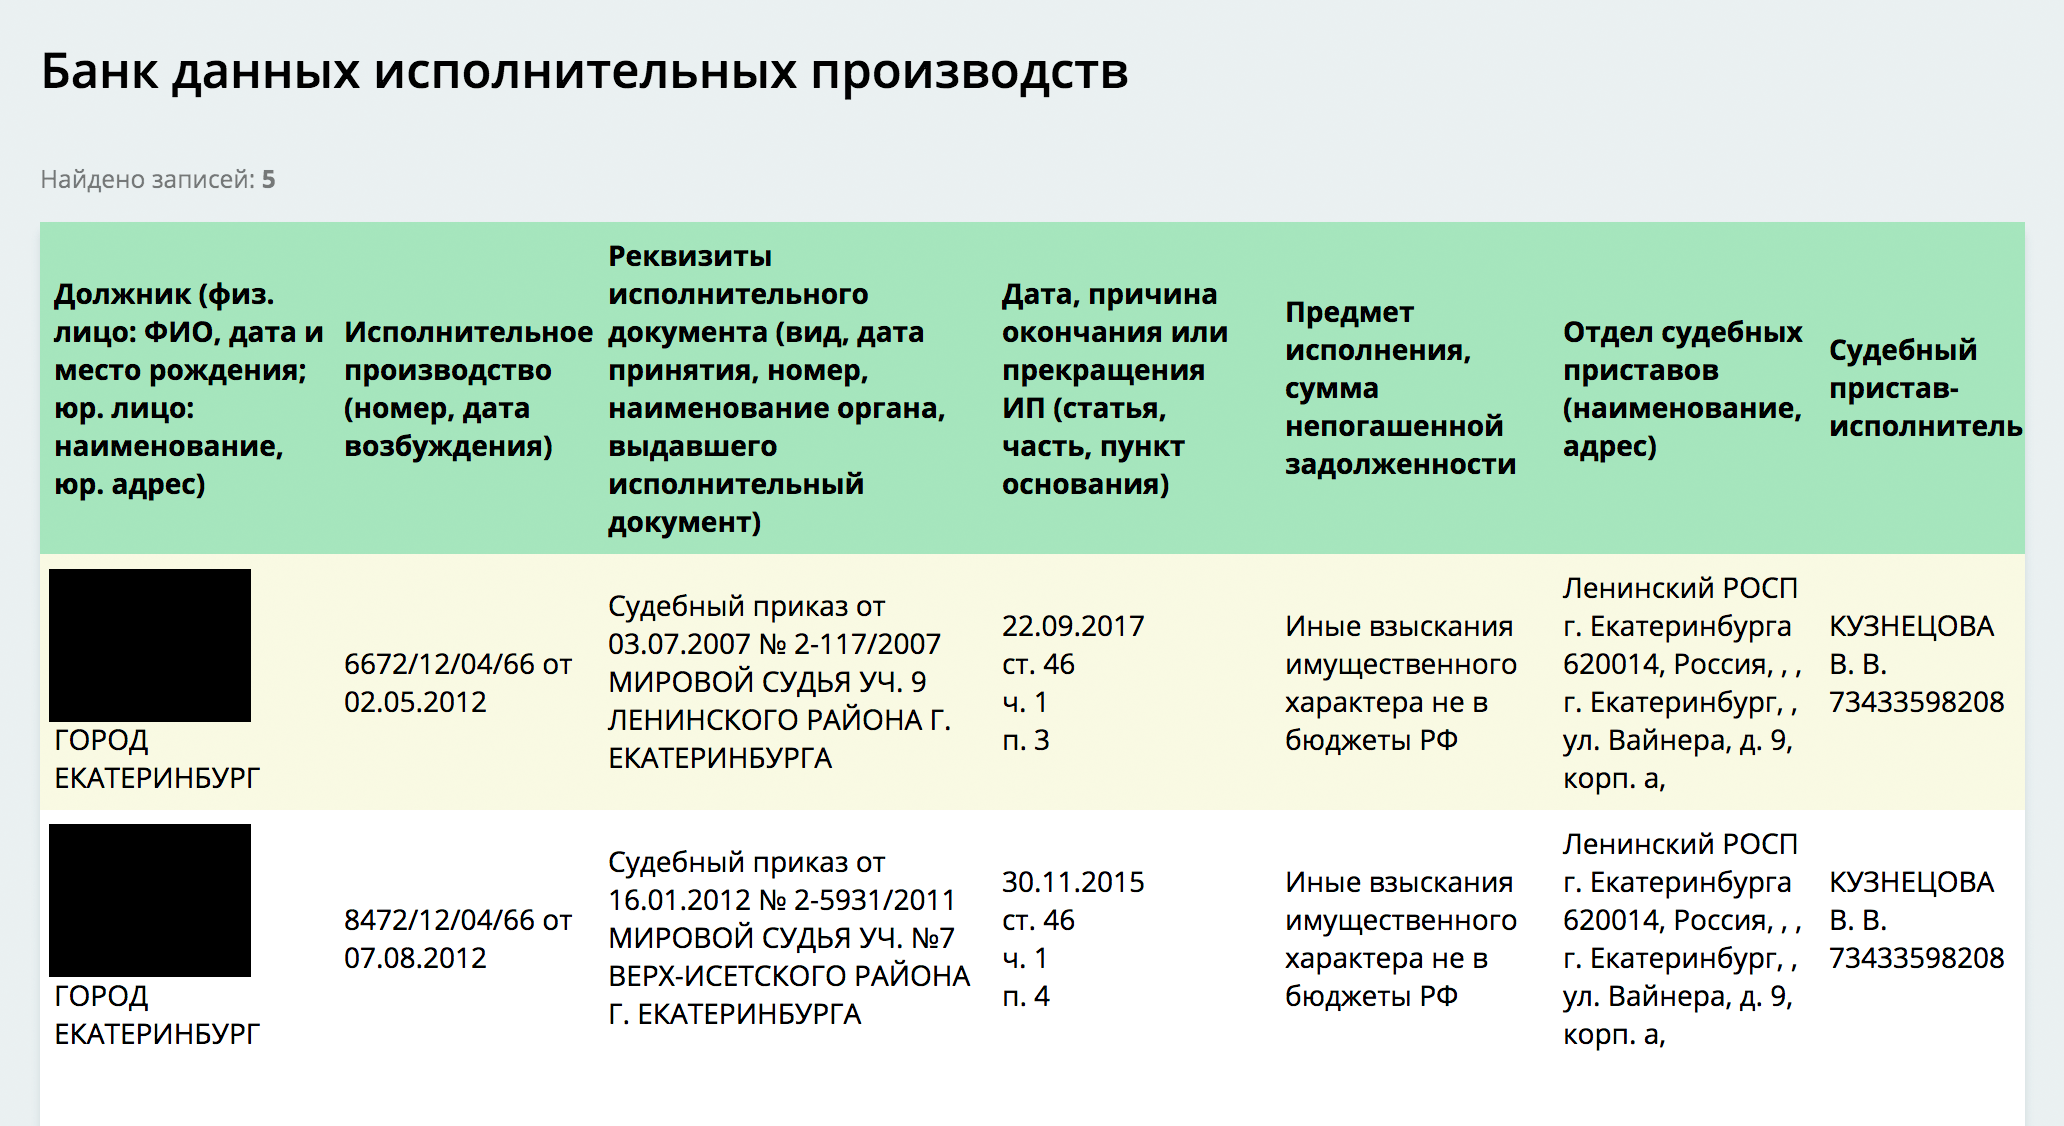 ВС разъяснил правила повторного предъявления исполлиста - новости centerforstrategy.ru